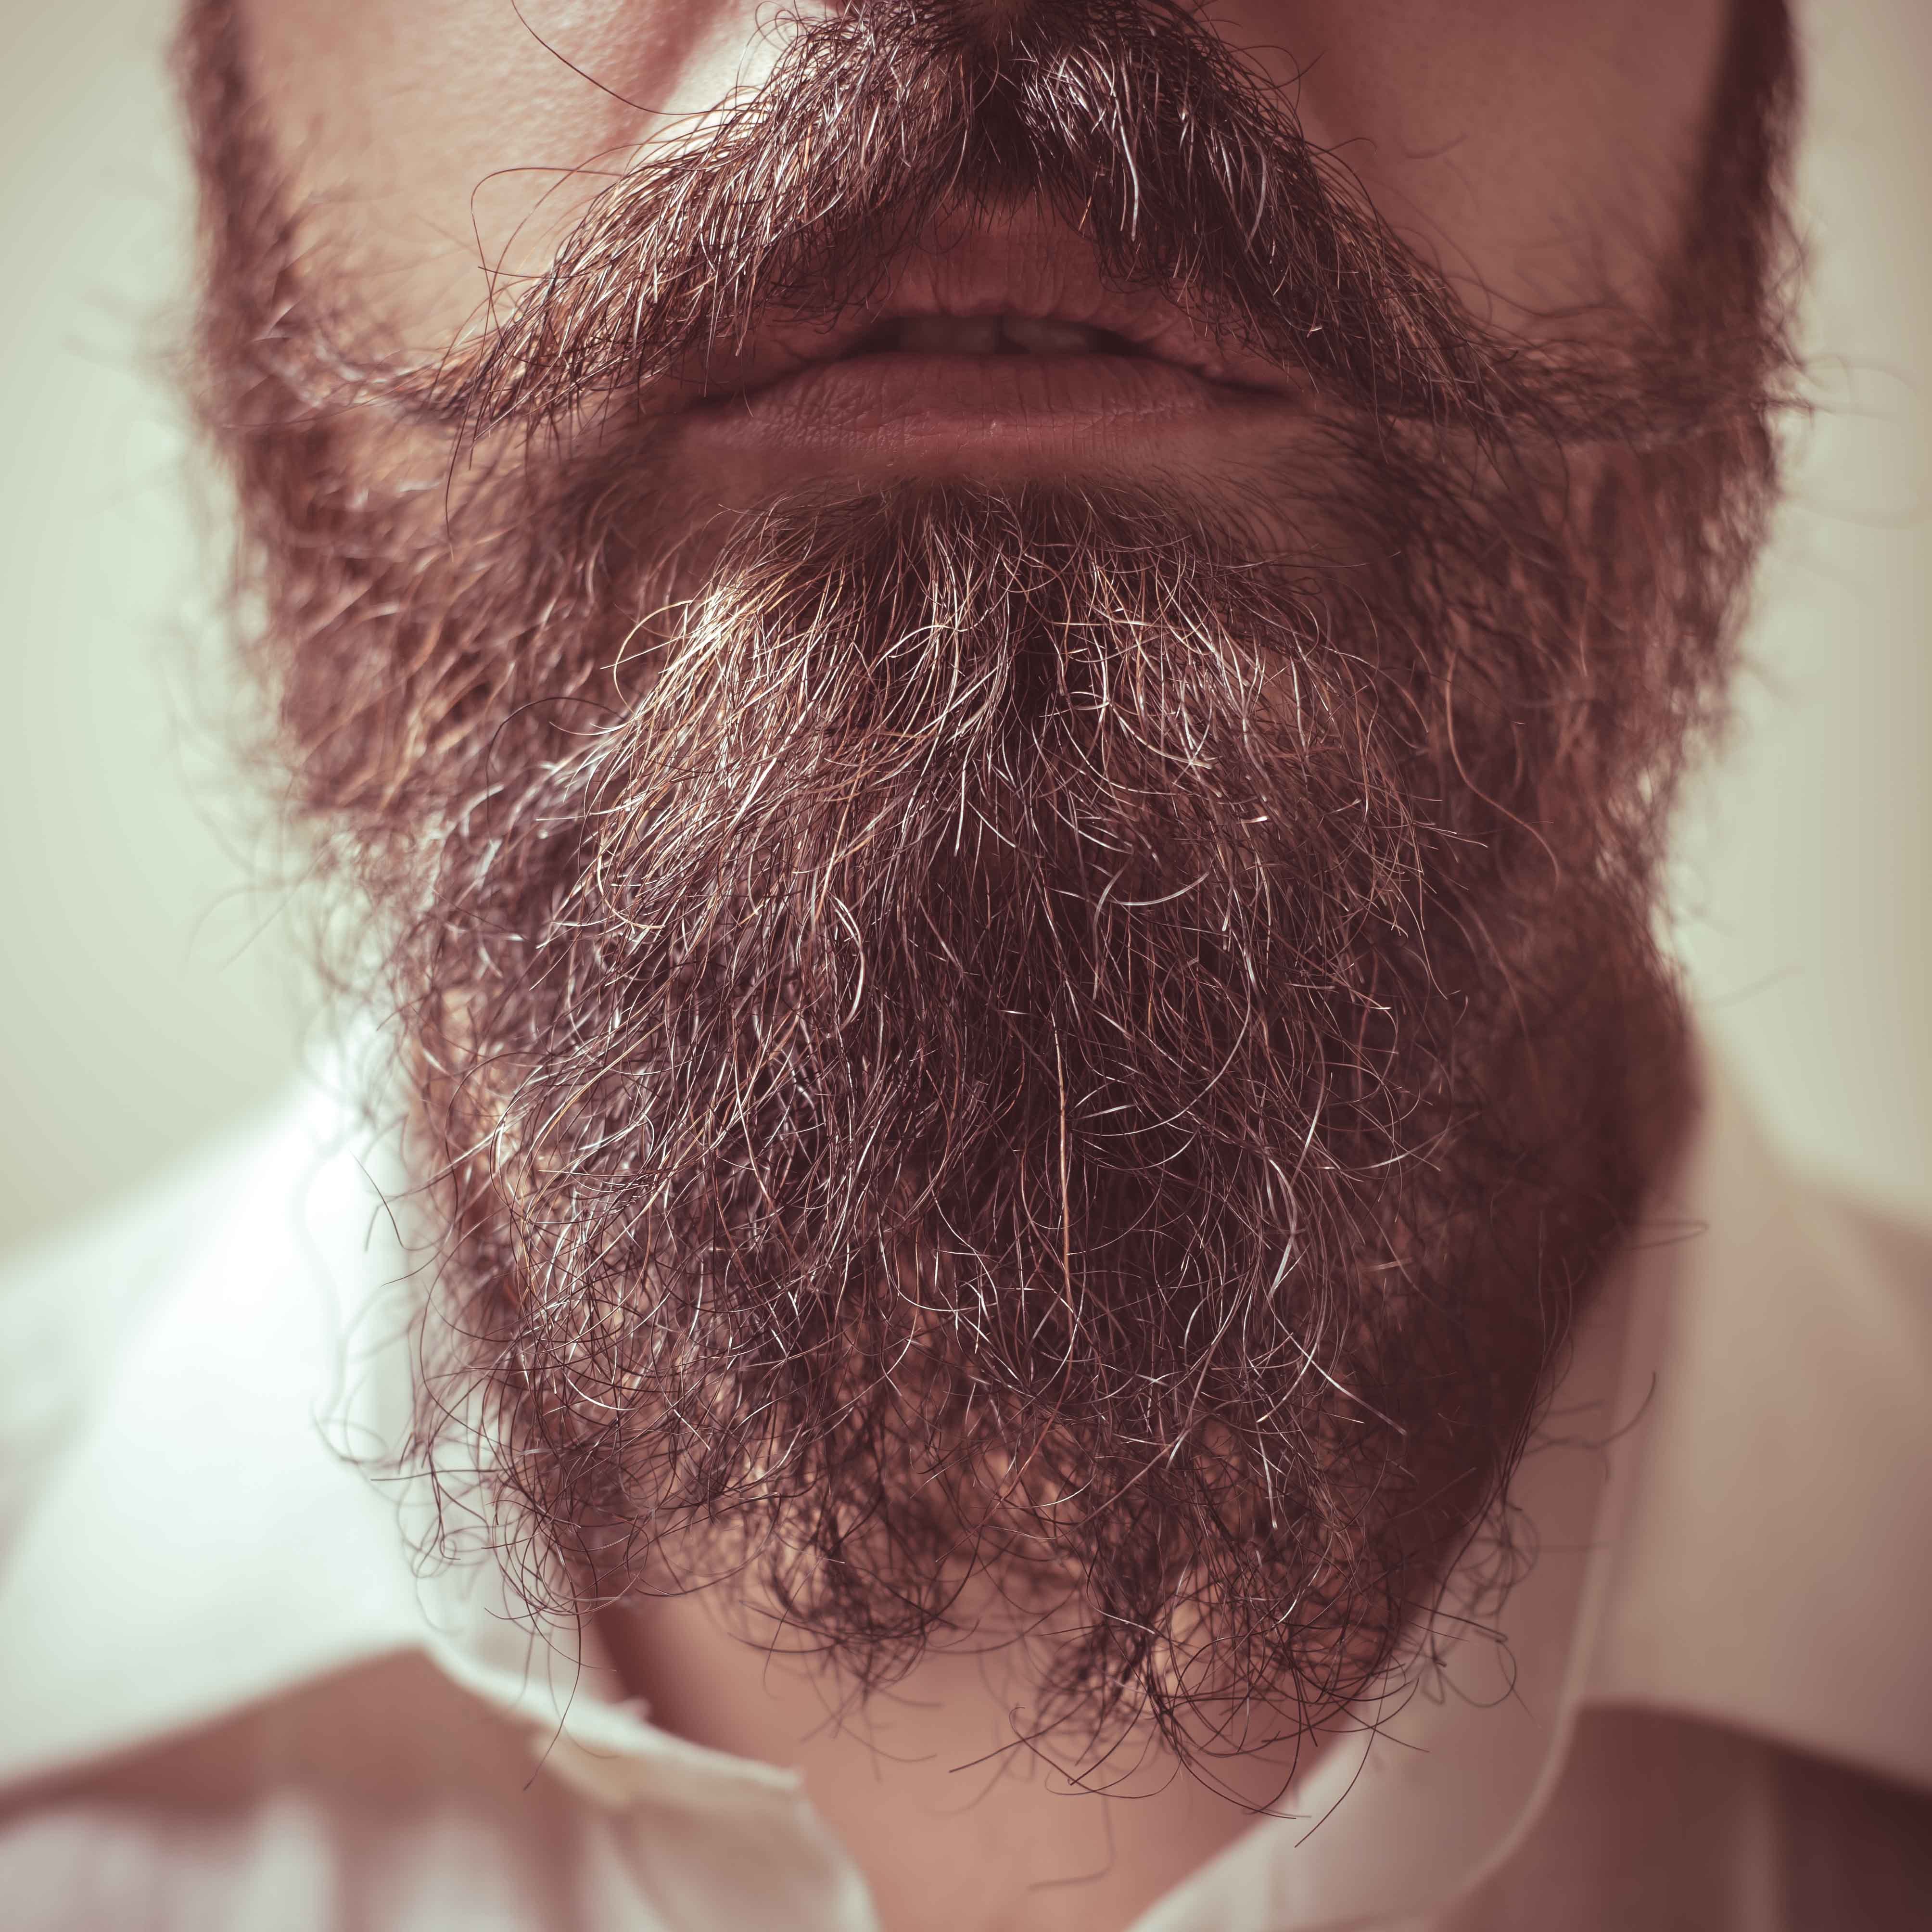 Una barba de cerca. | Foto: Shutterstock